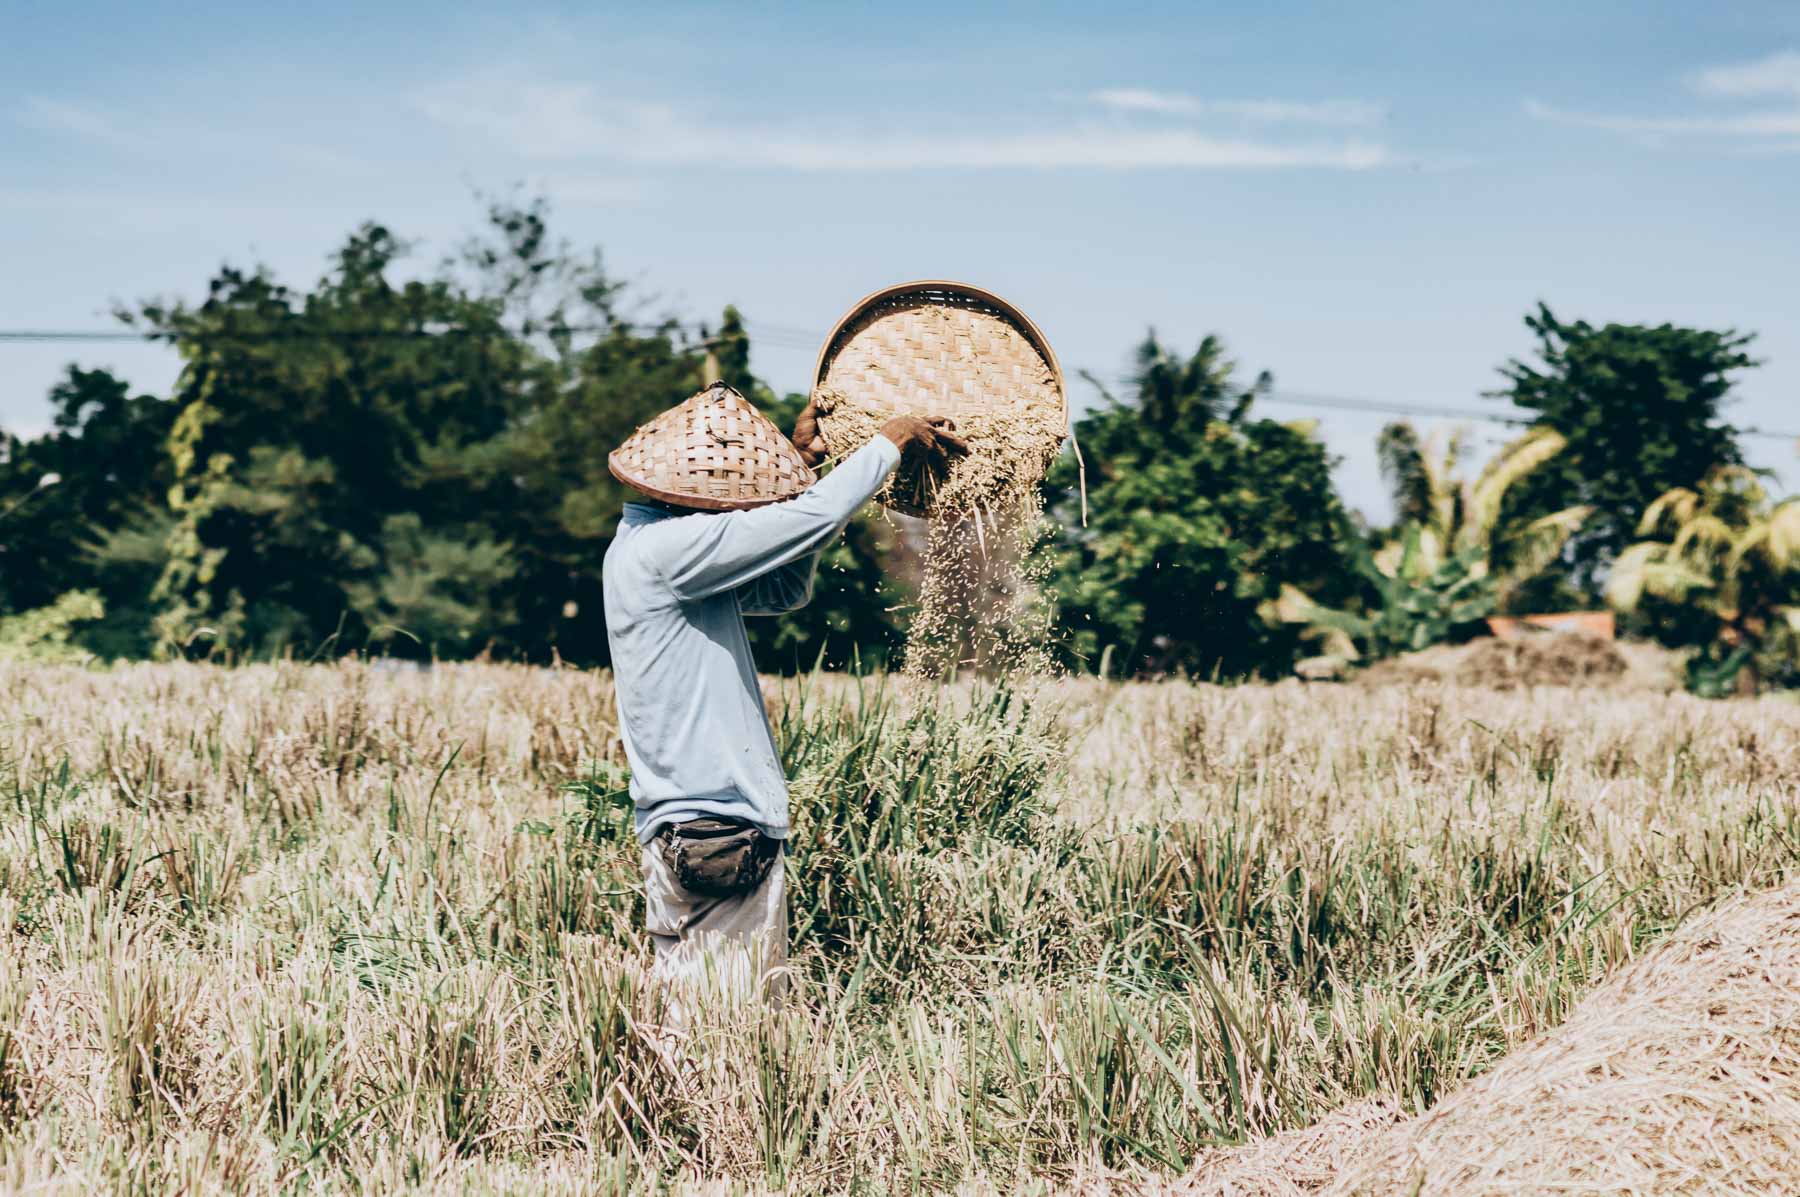 paysan des les rizières de Bali